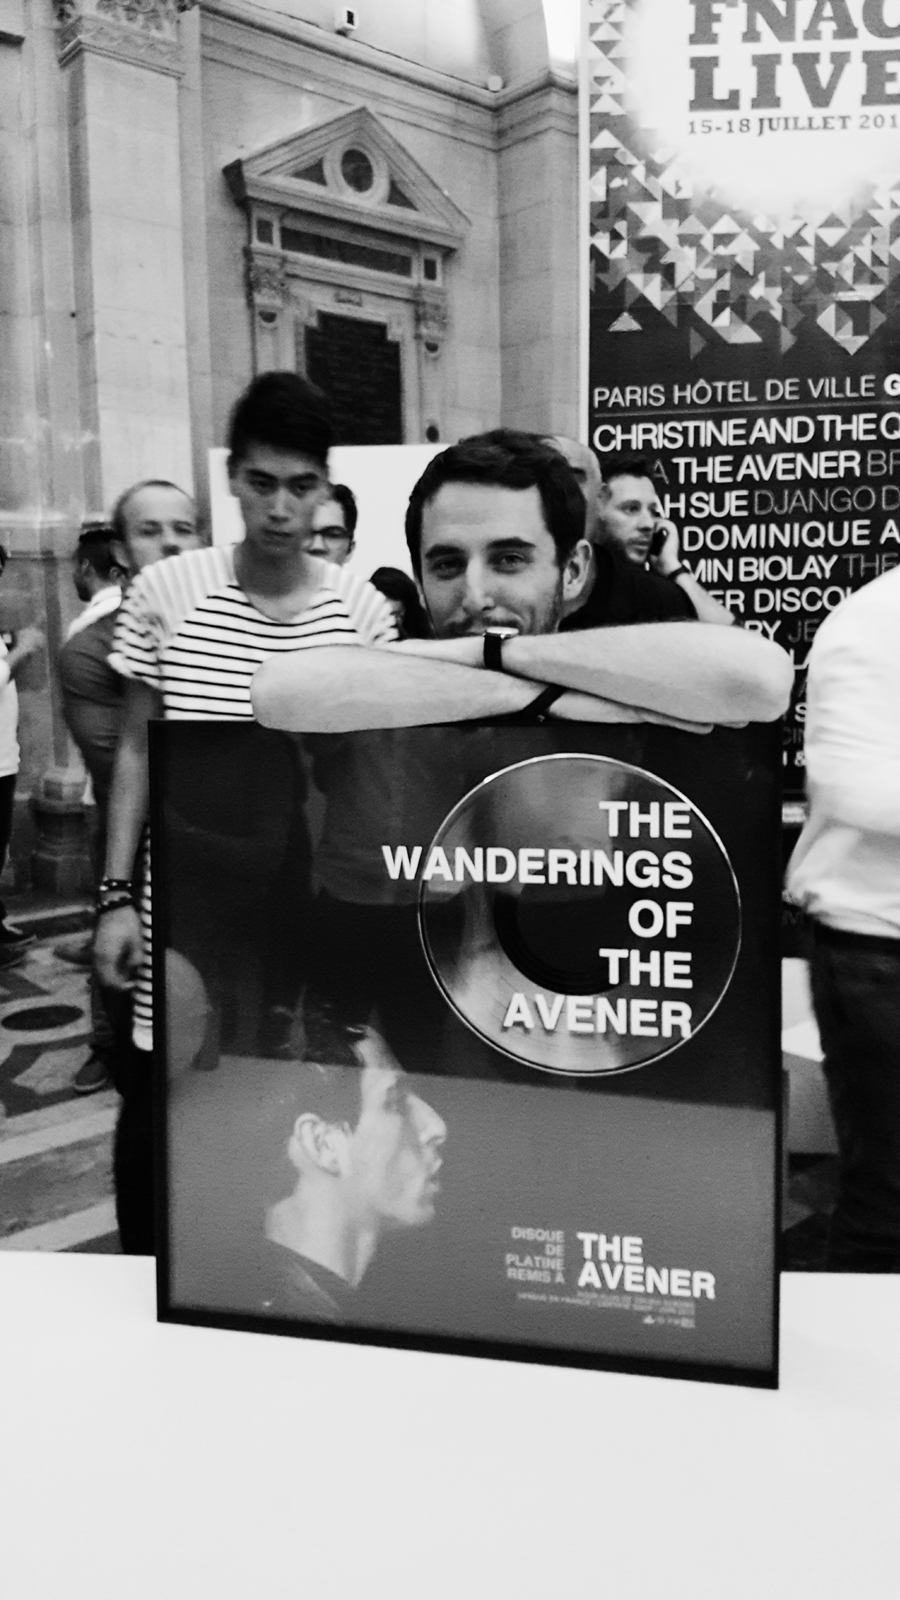 Le disque de platine de The Avener fnaclive 2015 festival concert live dj set Tristan Casara tournée The wanderings of the avener tour photo backstage by united states of paris blog